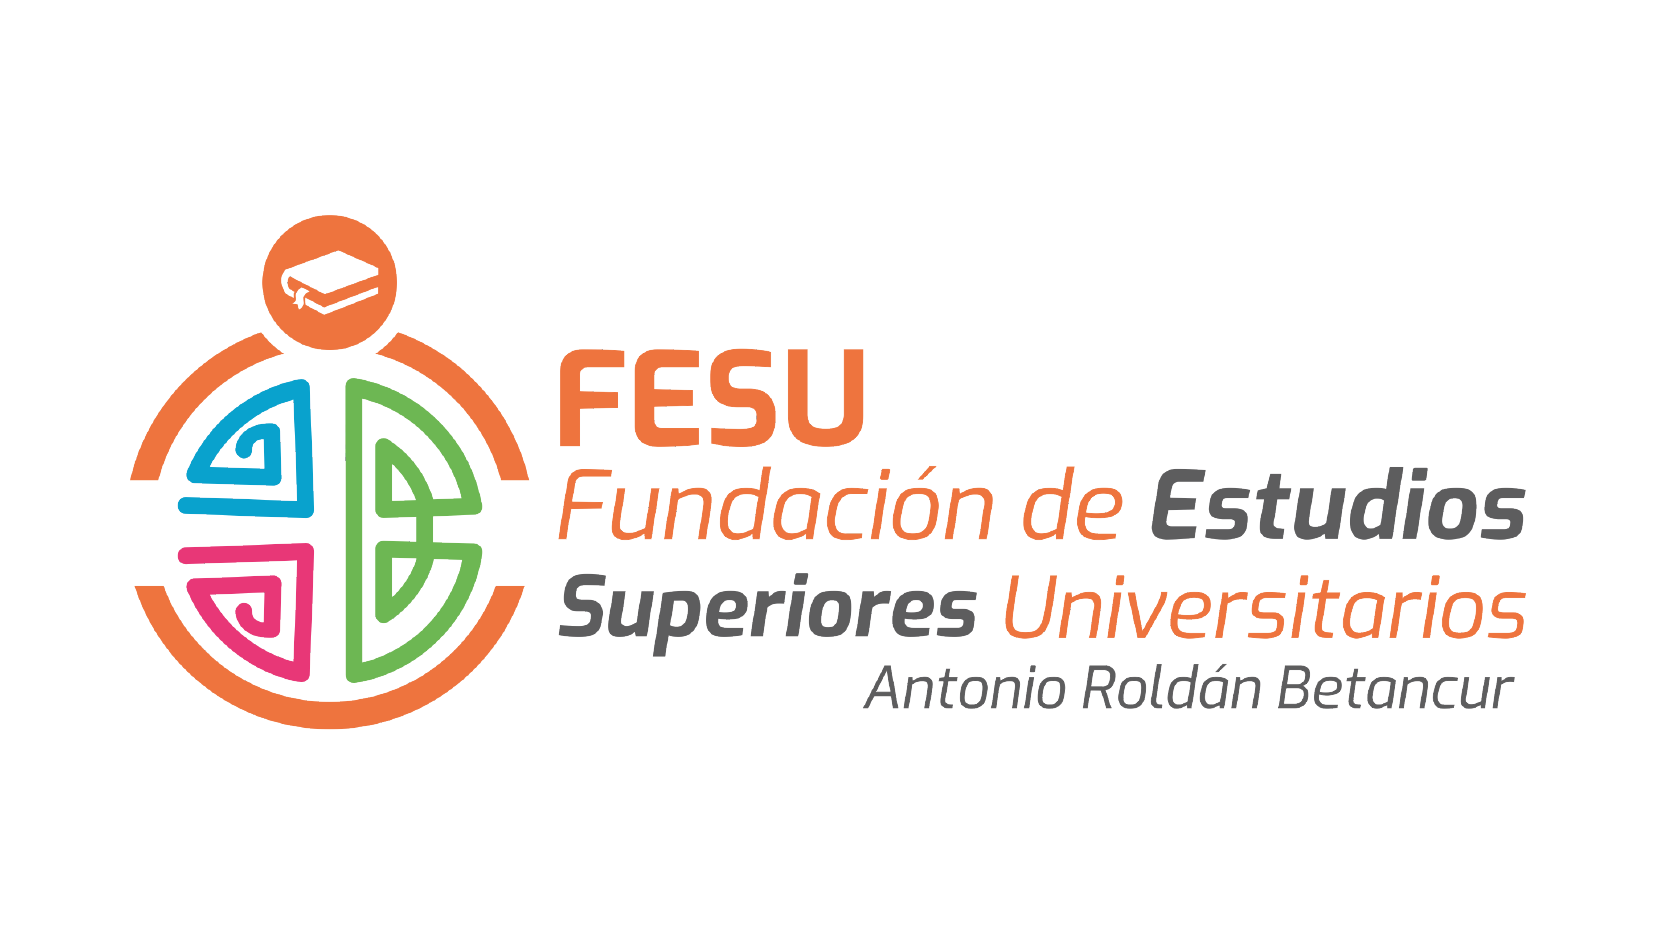 Fundación de Estudios Superiores Universitarios Antonio Roldán Betancur